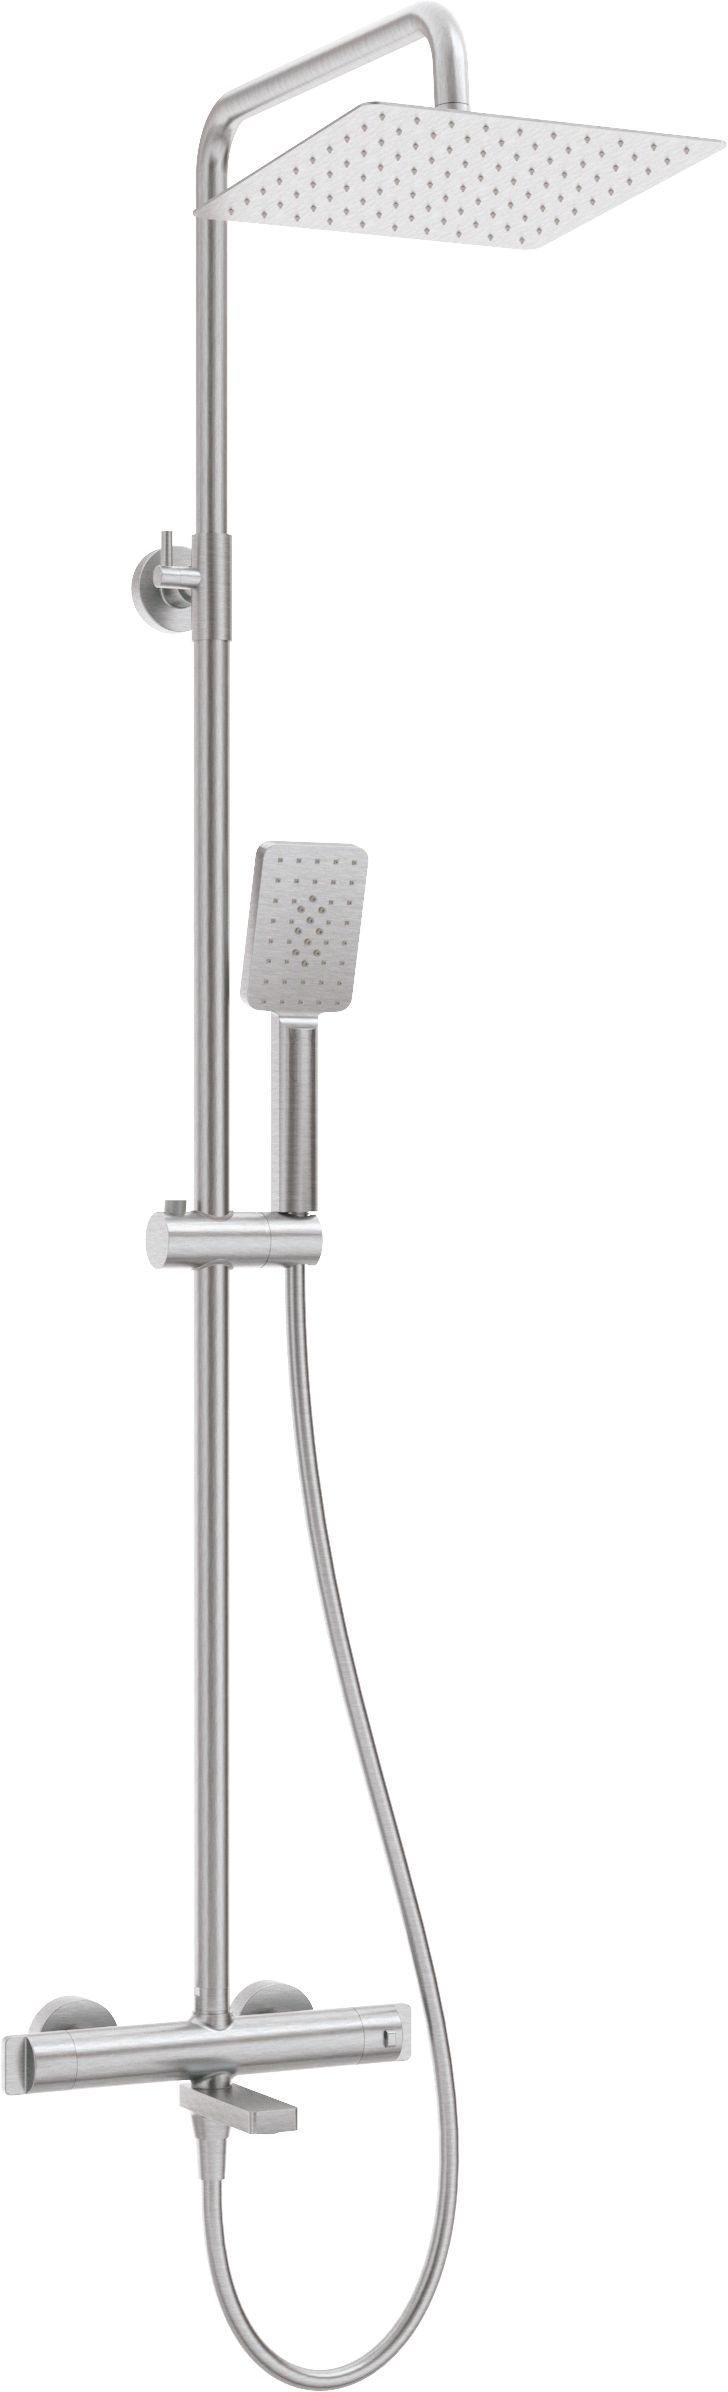 Deszczownica z baterią wannową termostatyczną - NAC_F1HT - Główne zdjęcie produktowe